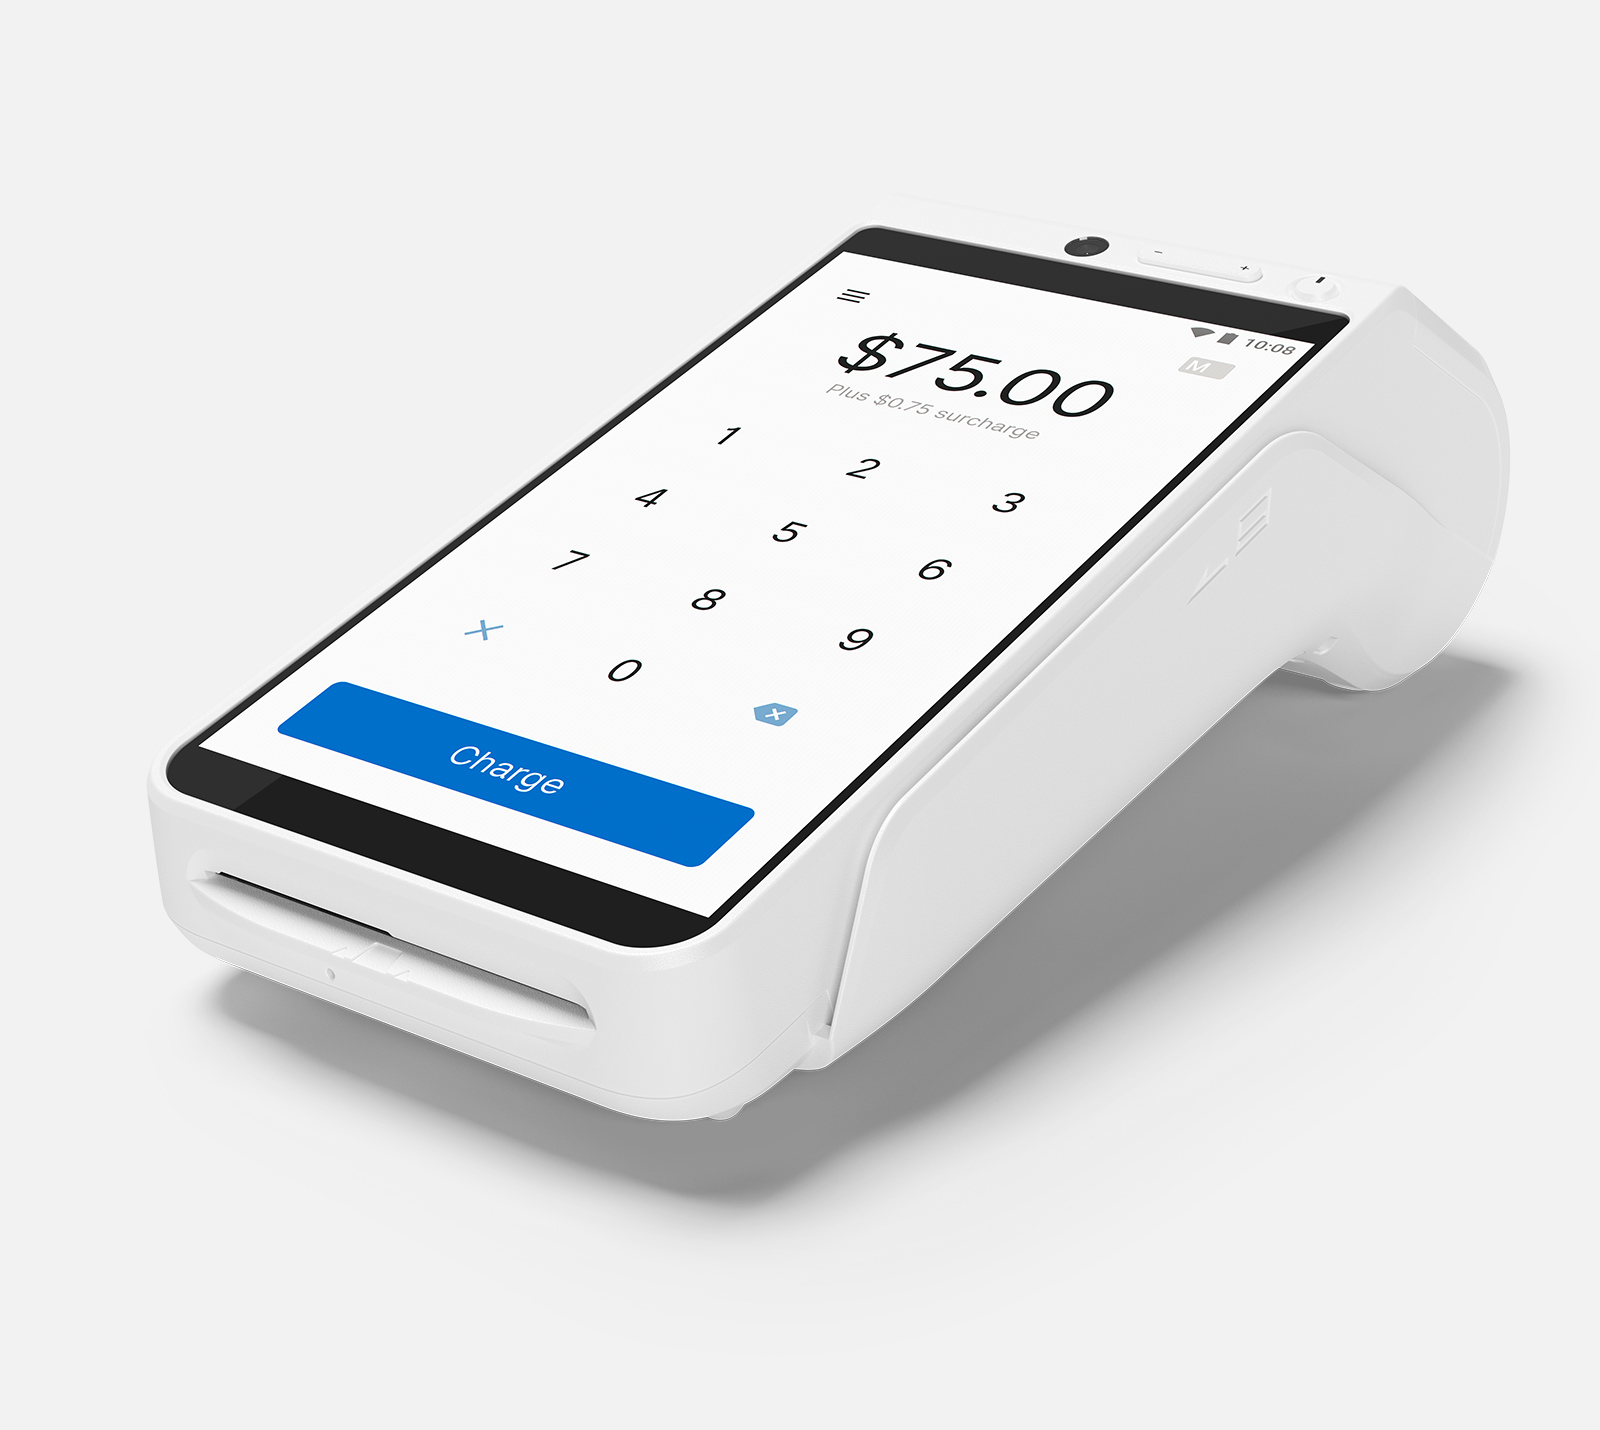 White Zeller mobile credit card reader